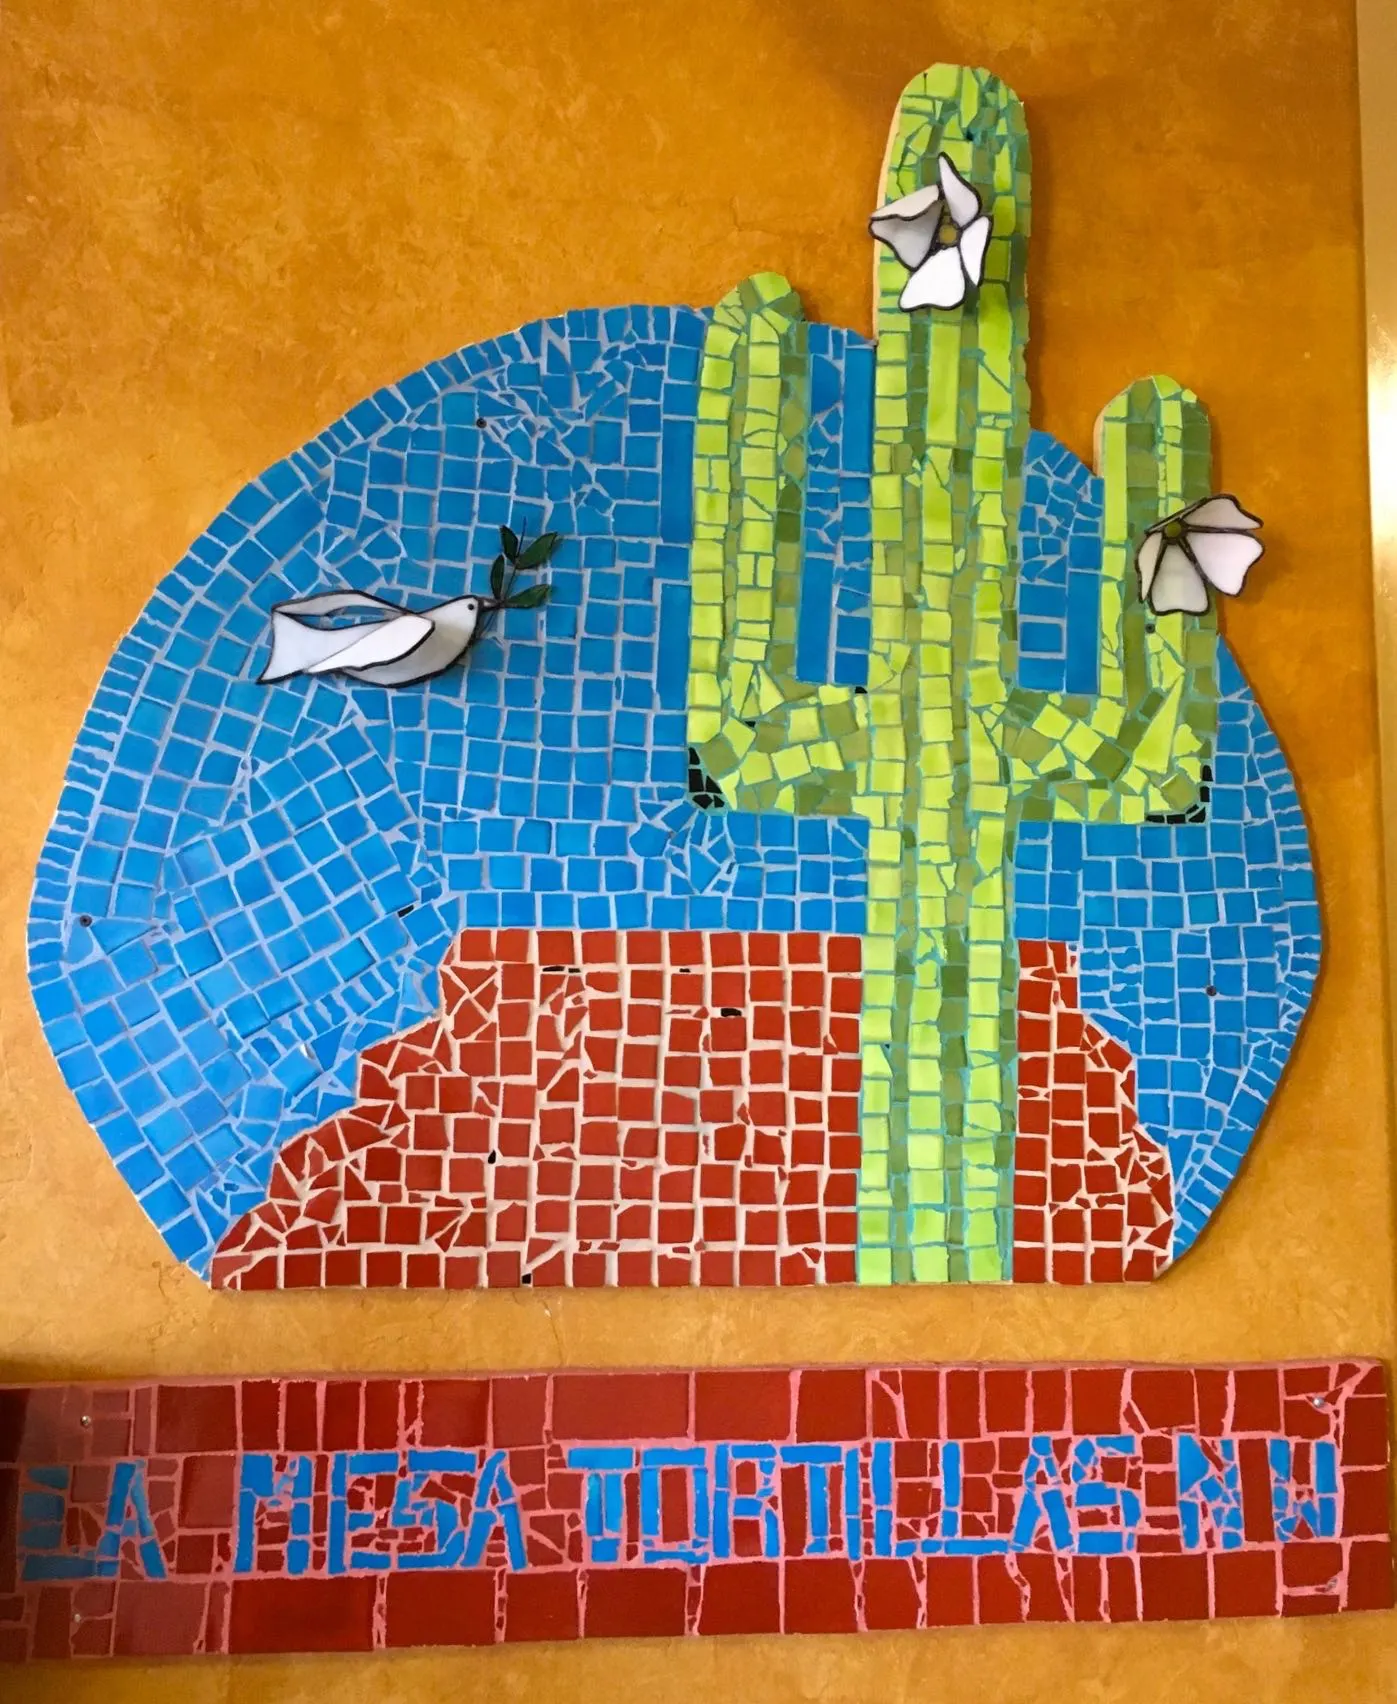 La Mesa Tortillas in Tucson